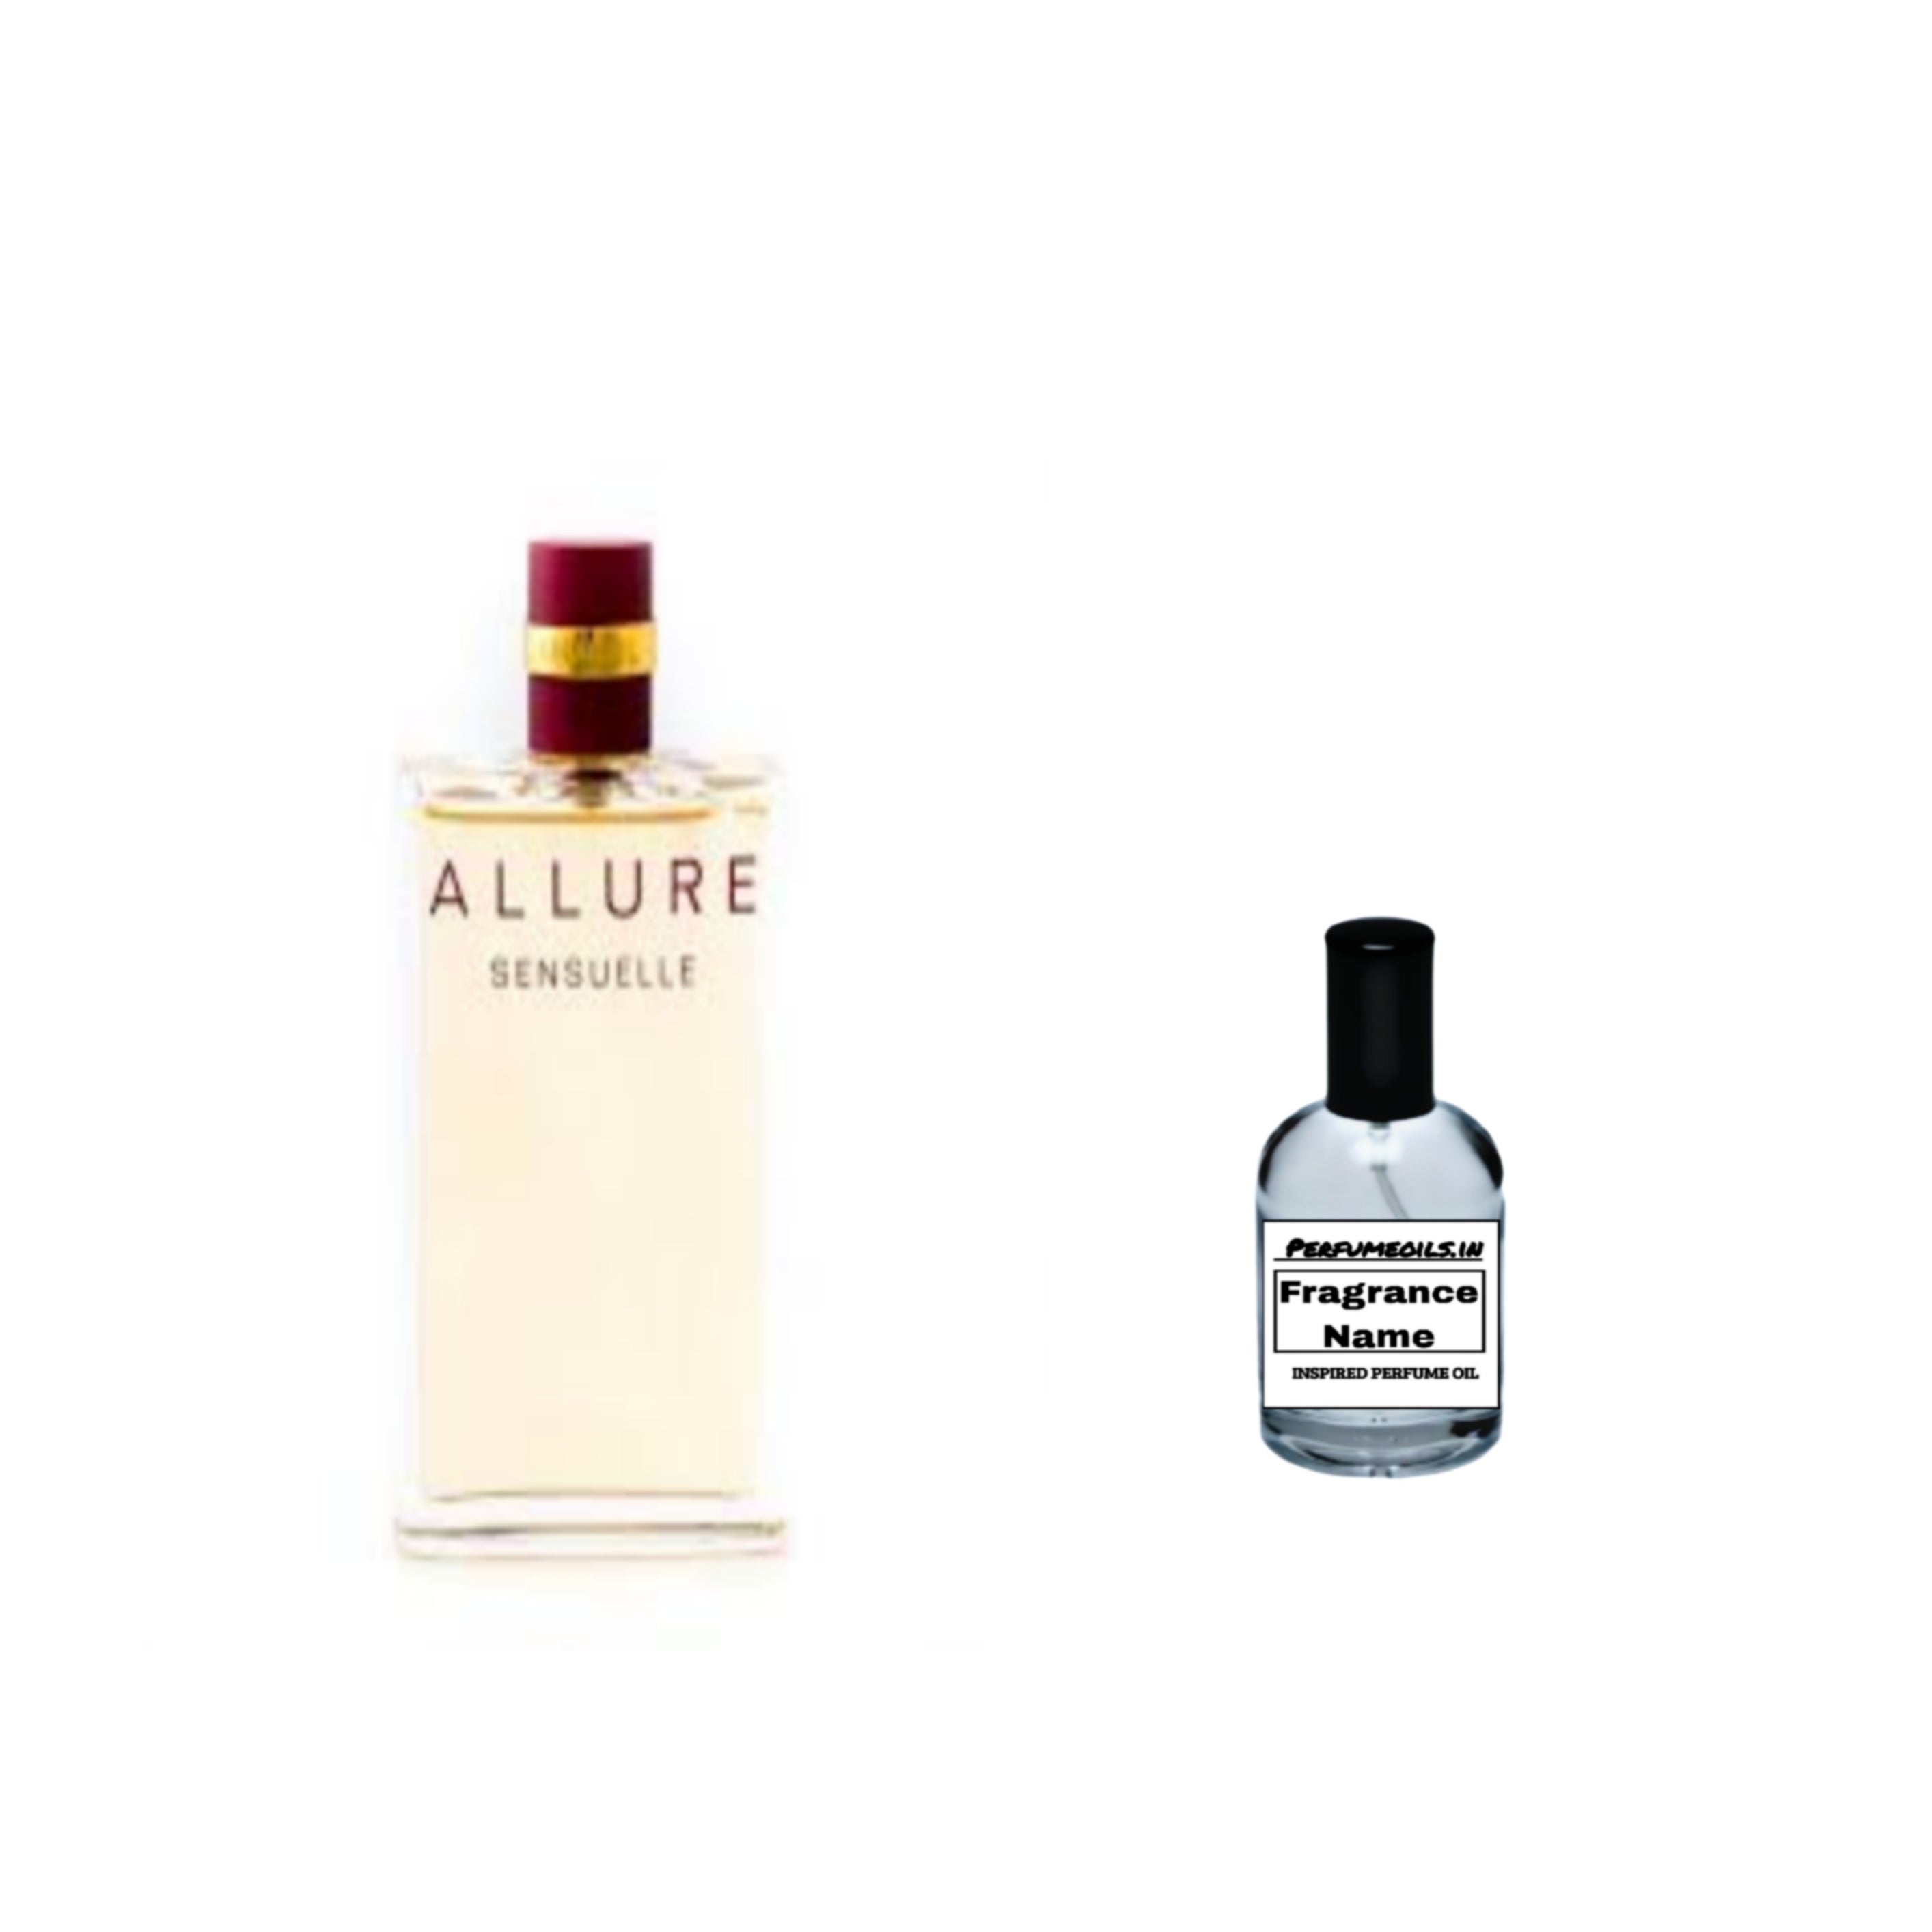 CHANEL Allure Sensuelle Eau de Parfum - Reviews